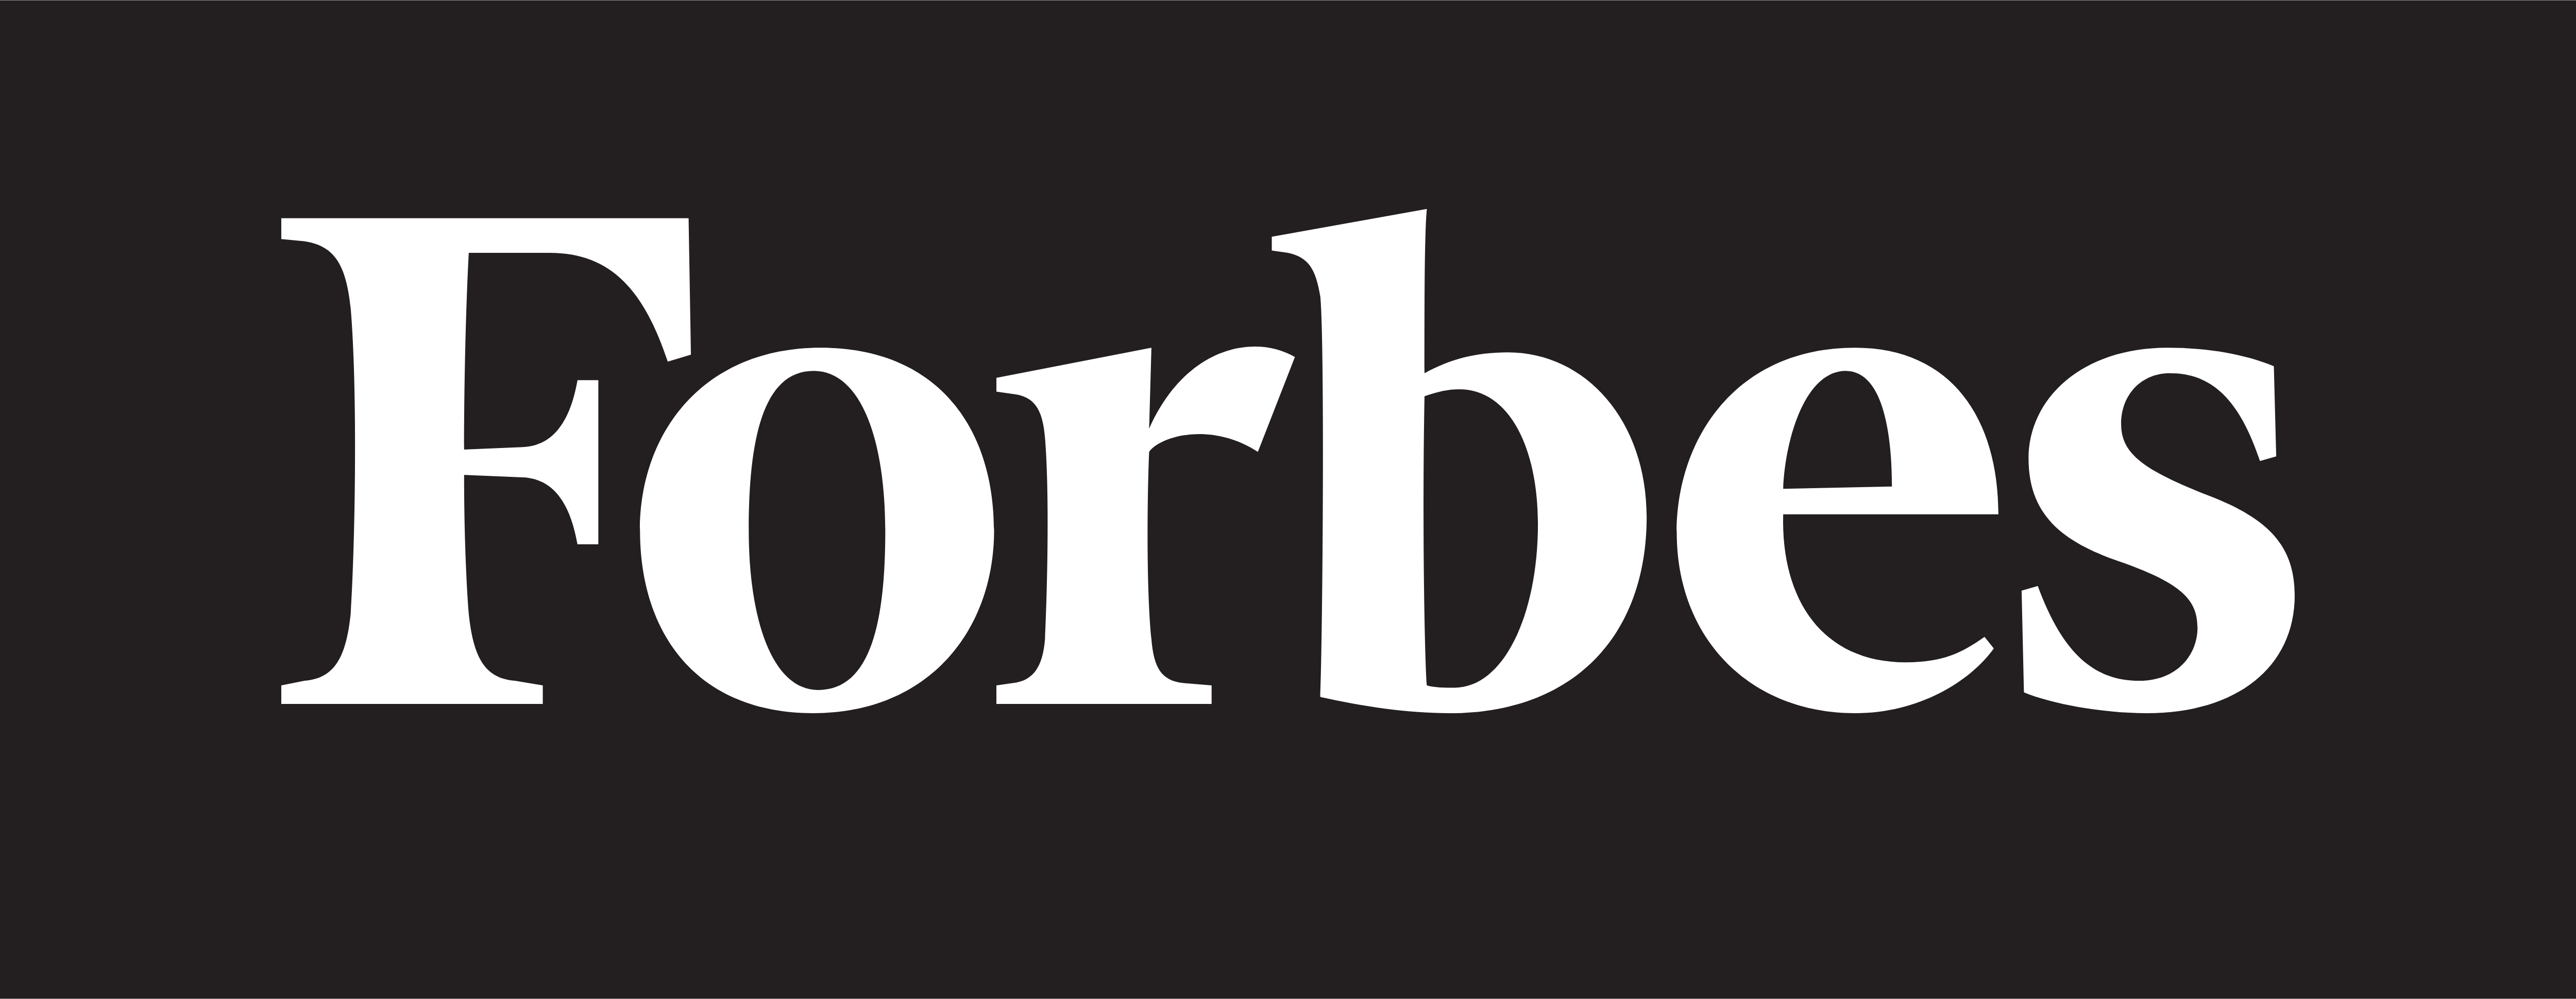 Forbes – Descarga de logotipos